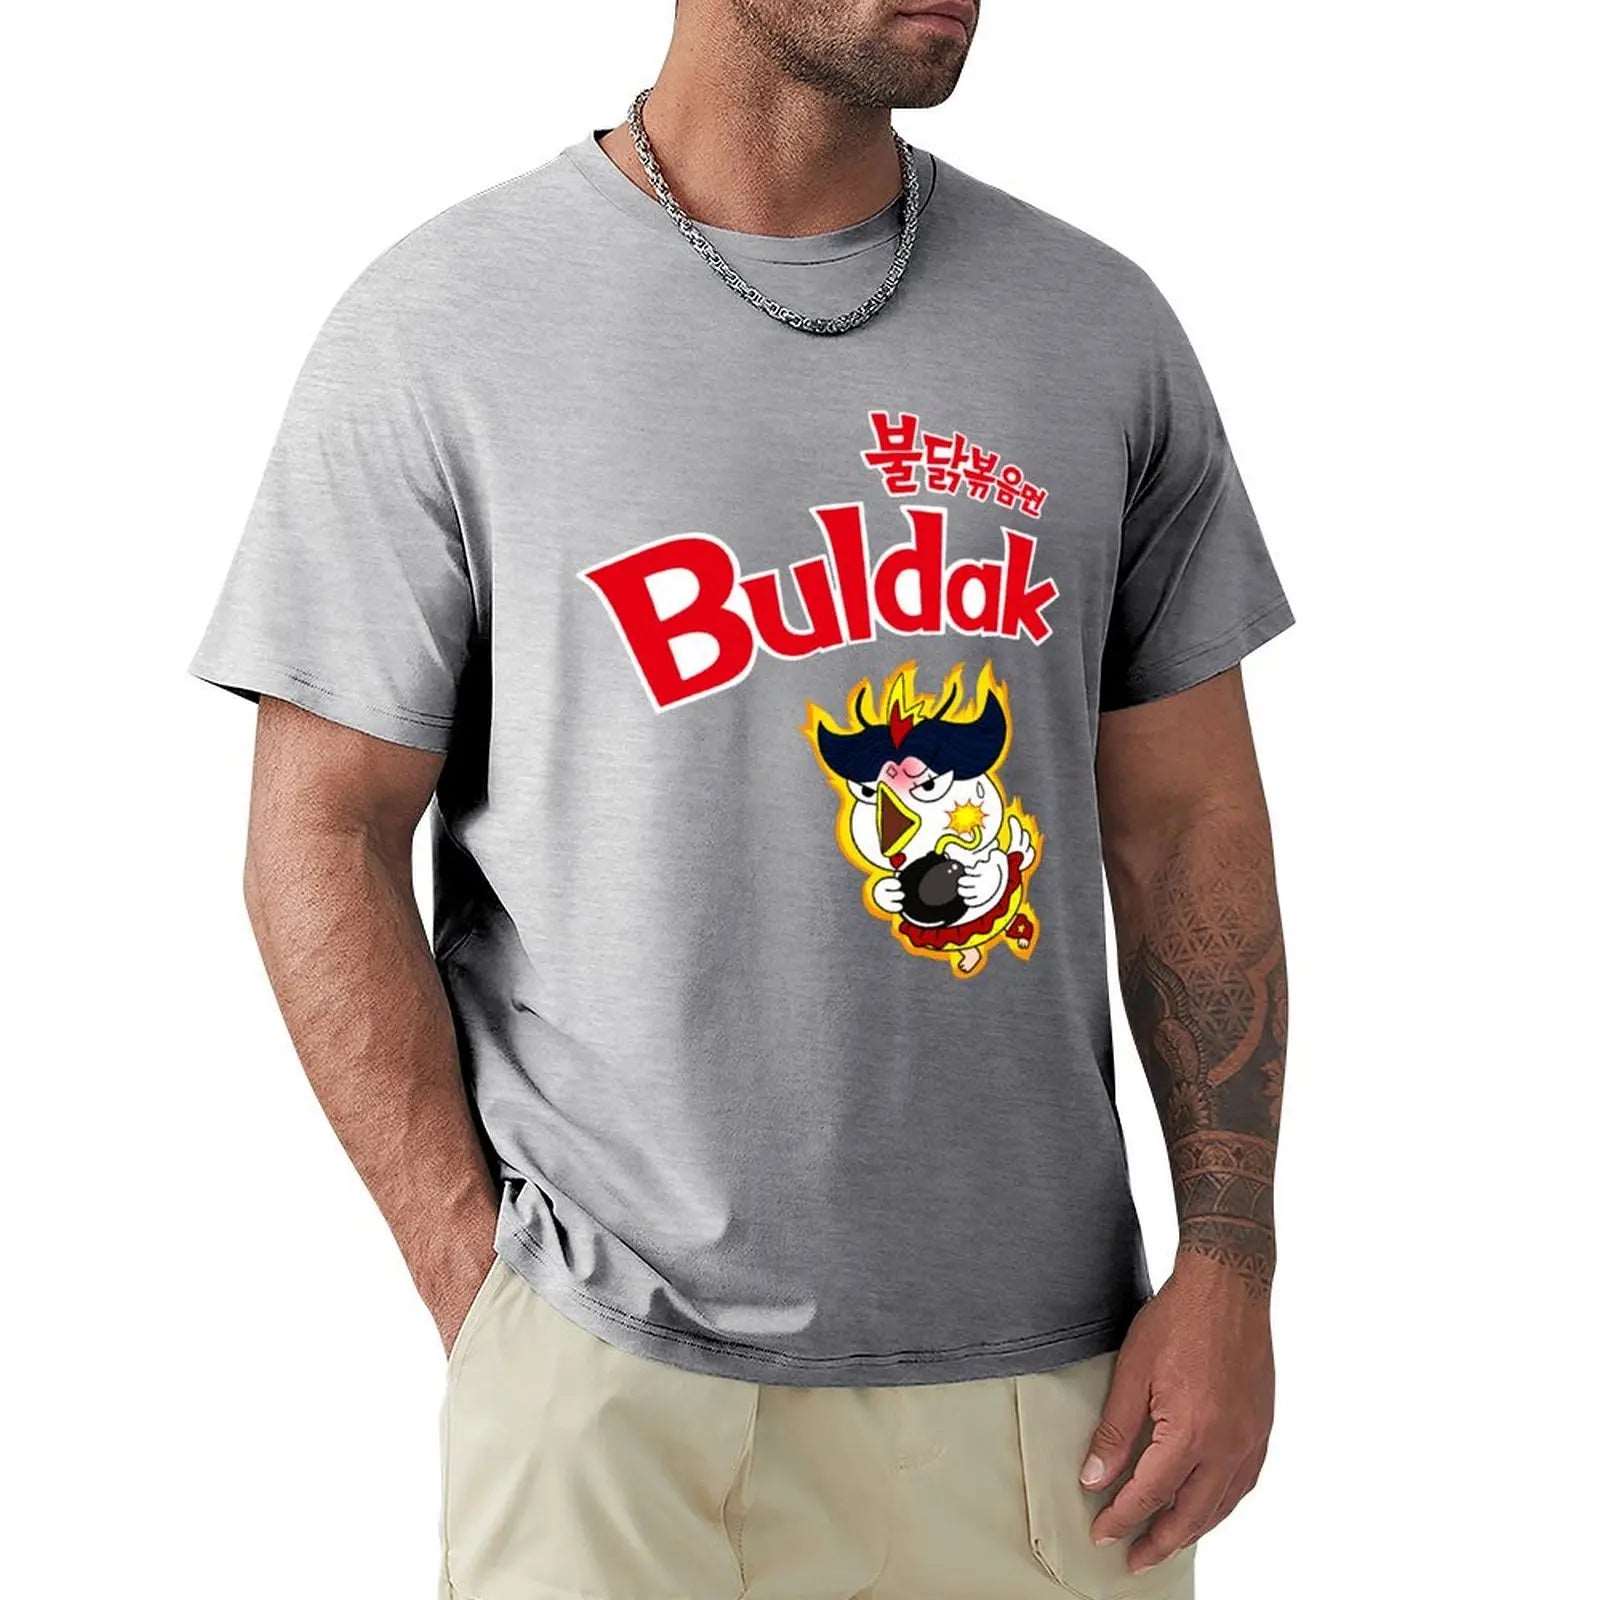 Buldak Hot Chicken Ramen T-Shirt - T Shirts from Dear Cece - Just £24.99! Shop now at Dear Cece